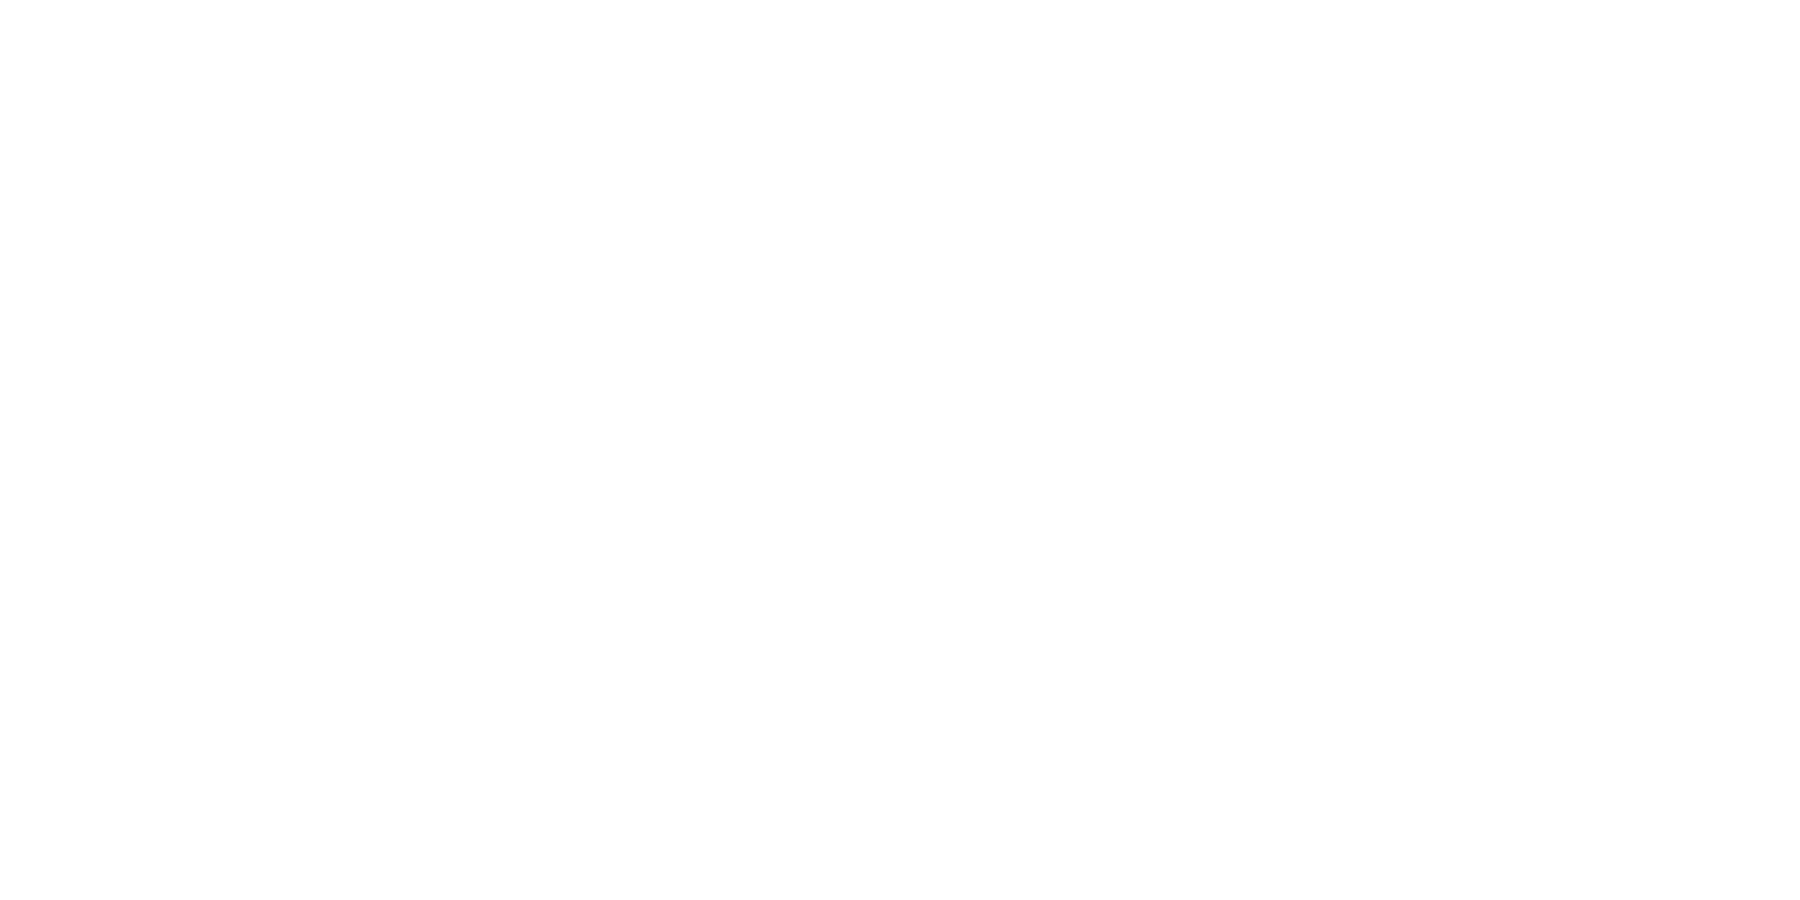 Advantage Retirement Services, INC